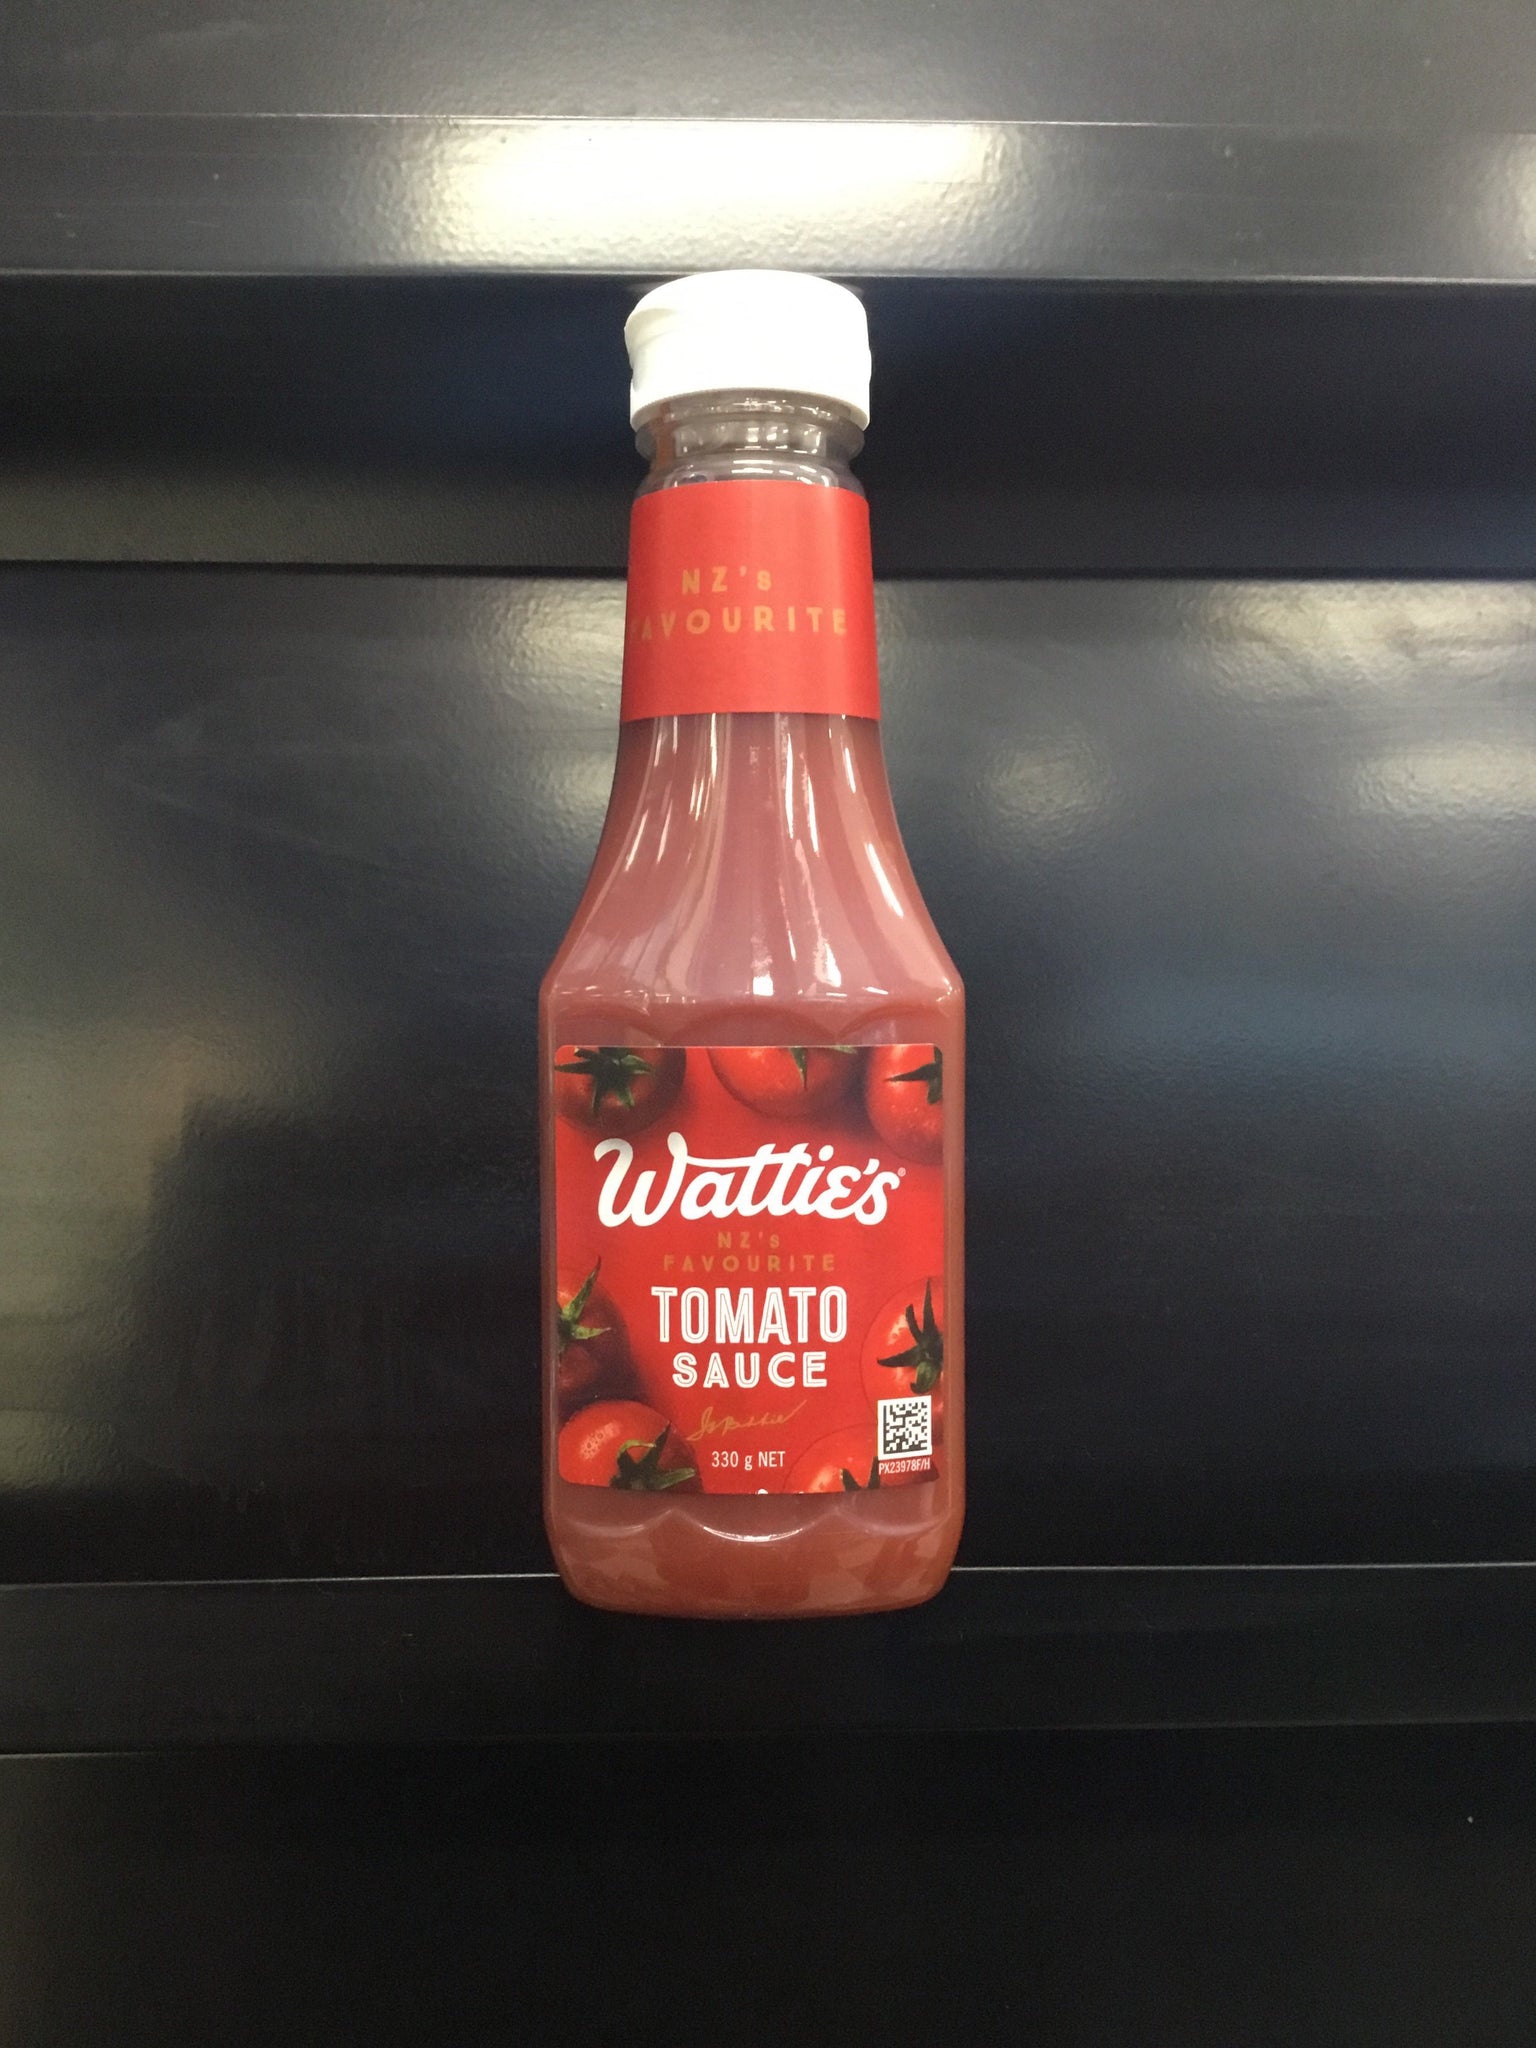 Wattie's Tomato Sauce  330g